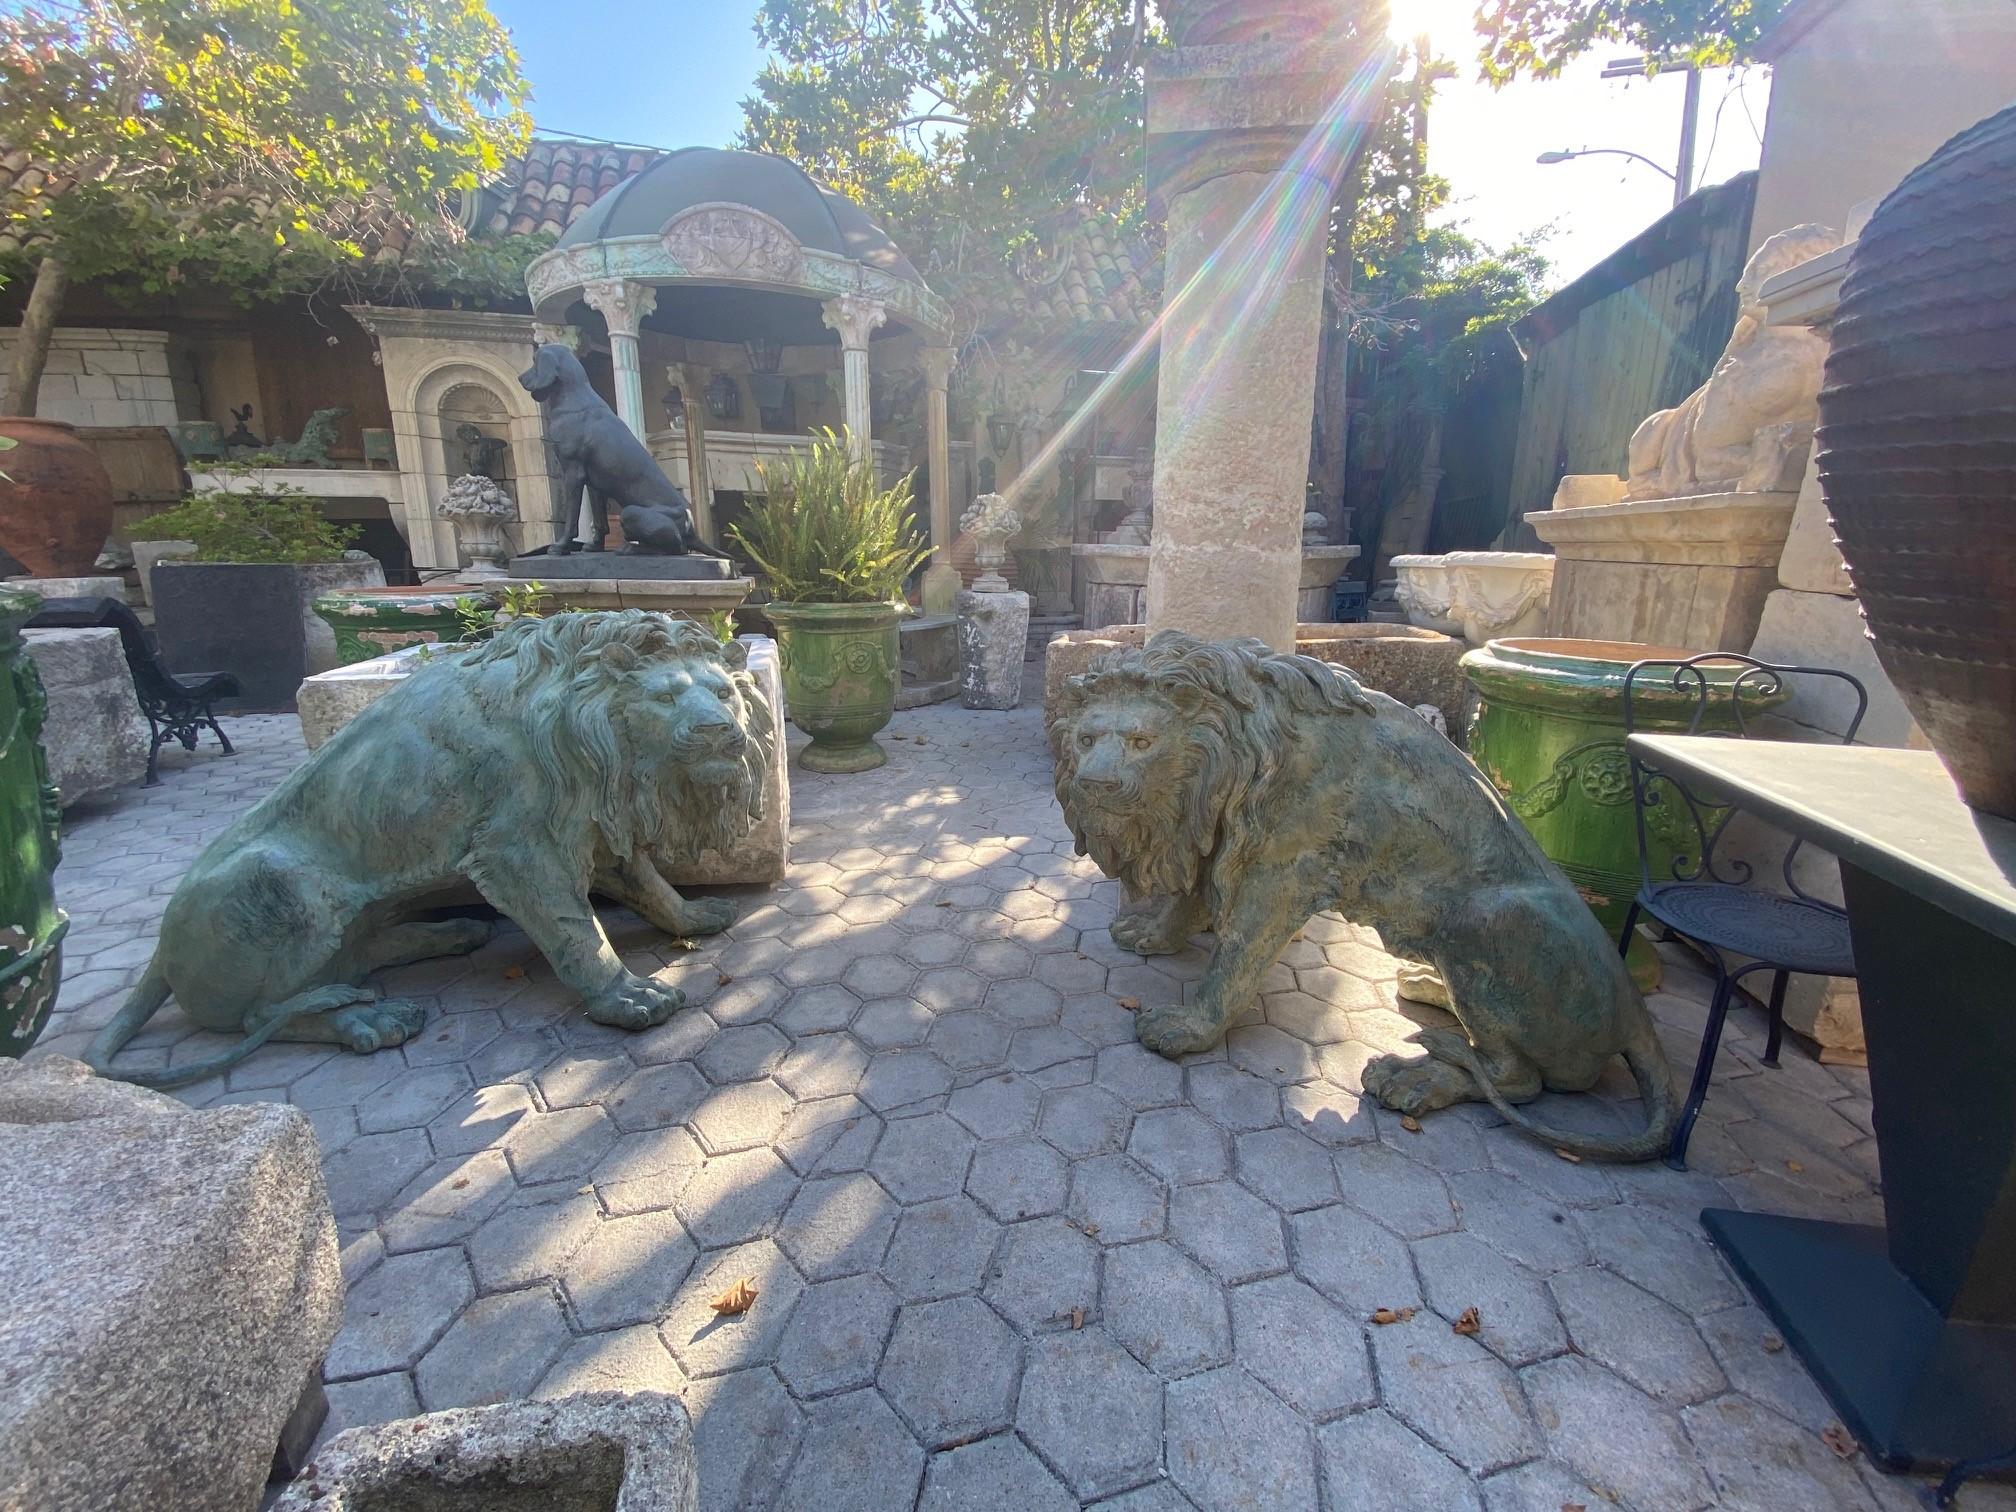 Großes Paar patiniert Leben Größe Bronzestatuen Skulptur von Regal Big Cats Lions. Außergewöhnlich detaillierte hohe Qualität Großes Paar von patinierten Bronzestatuen von sitzenden Löwen, hervorragende Verarbeitung mit feiner Aufmerksamkeit für